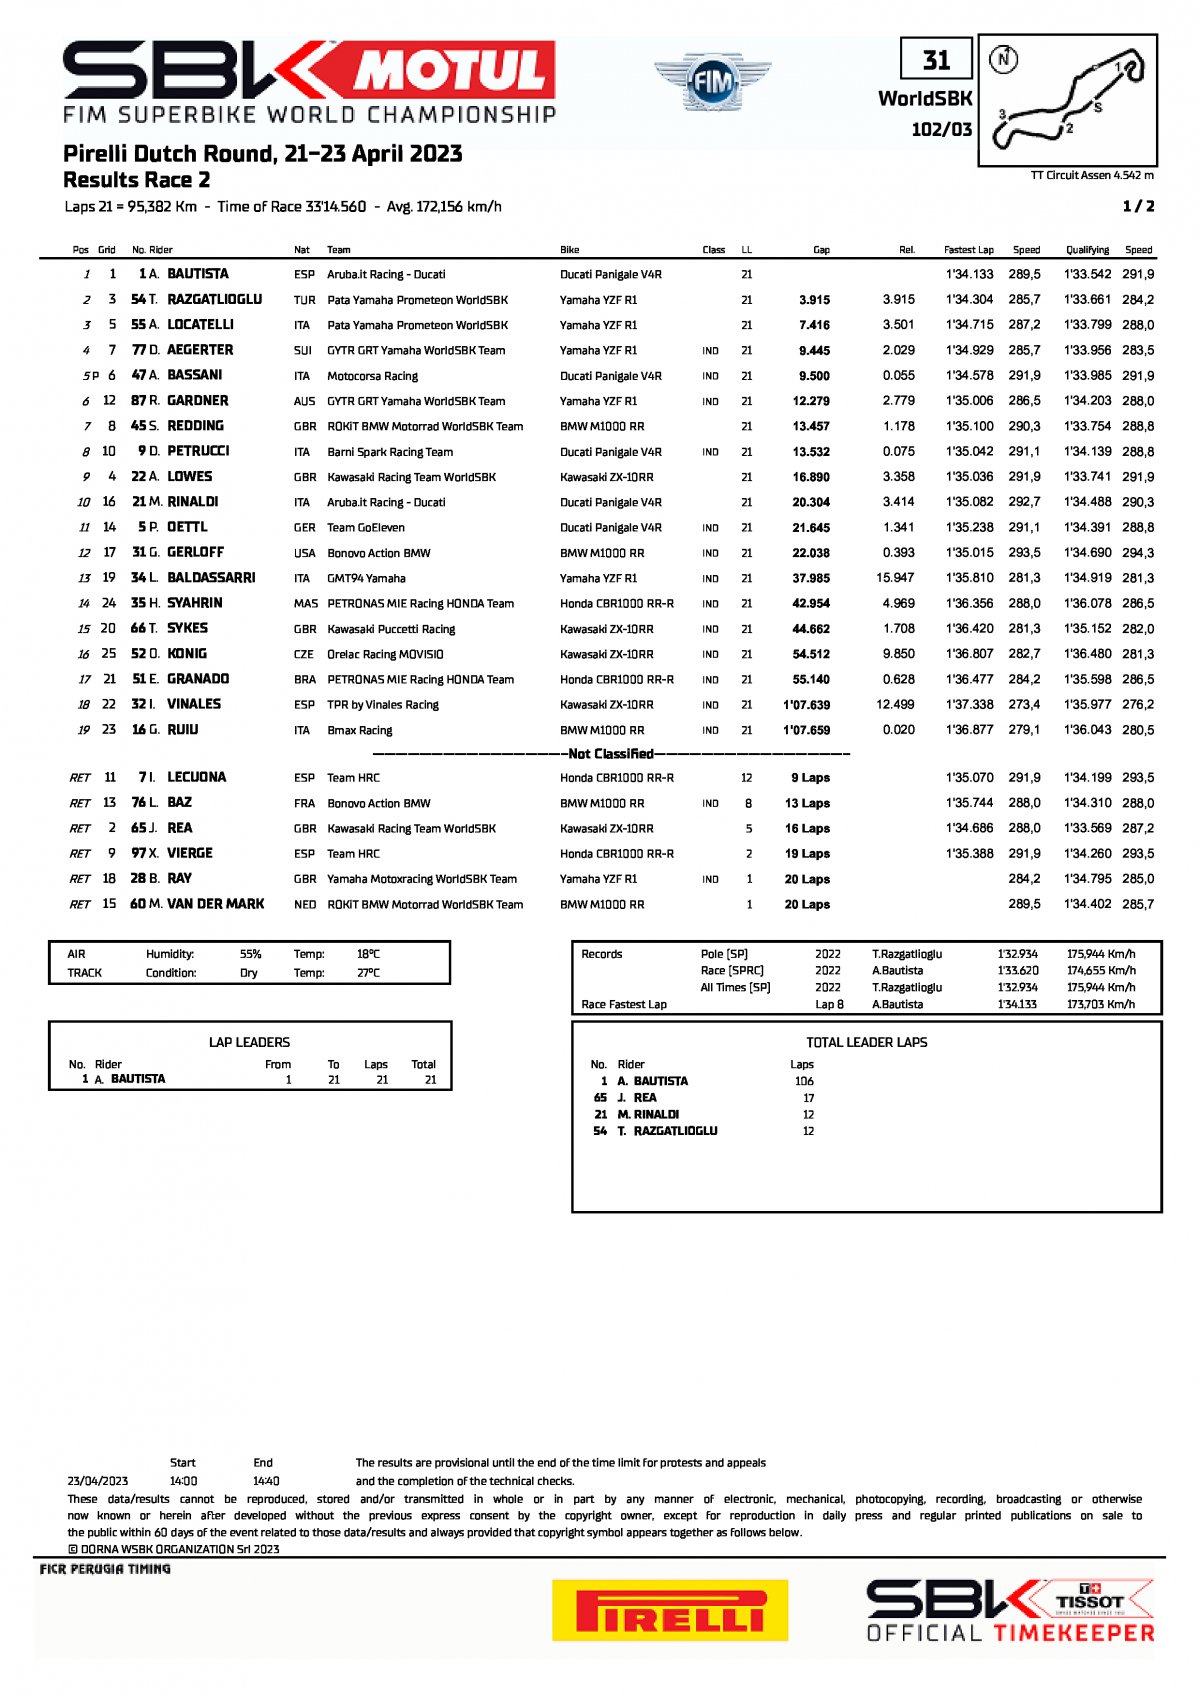 Результаты воскресной гонки WorldSBK, TT Circuit Assen (22/04/2023)